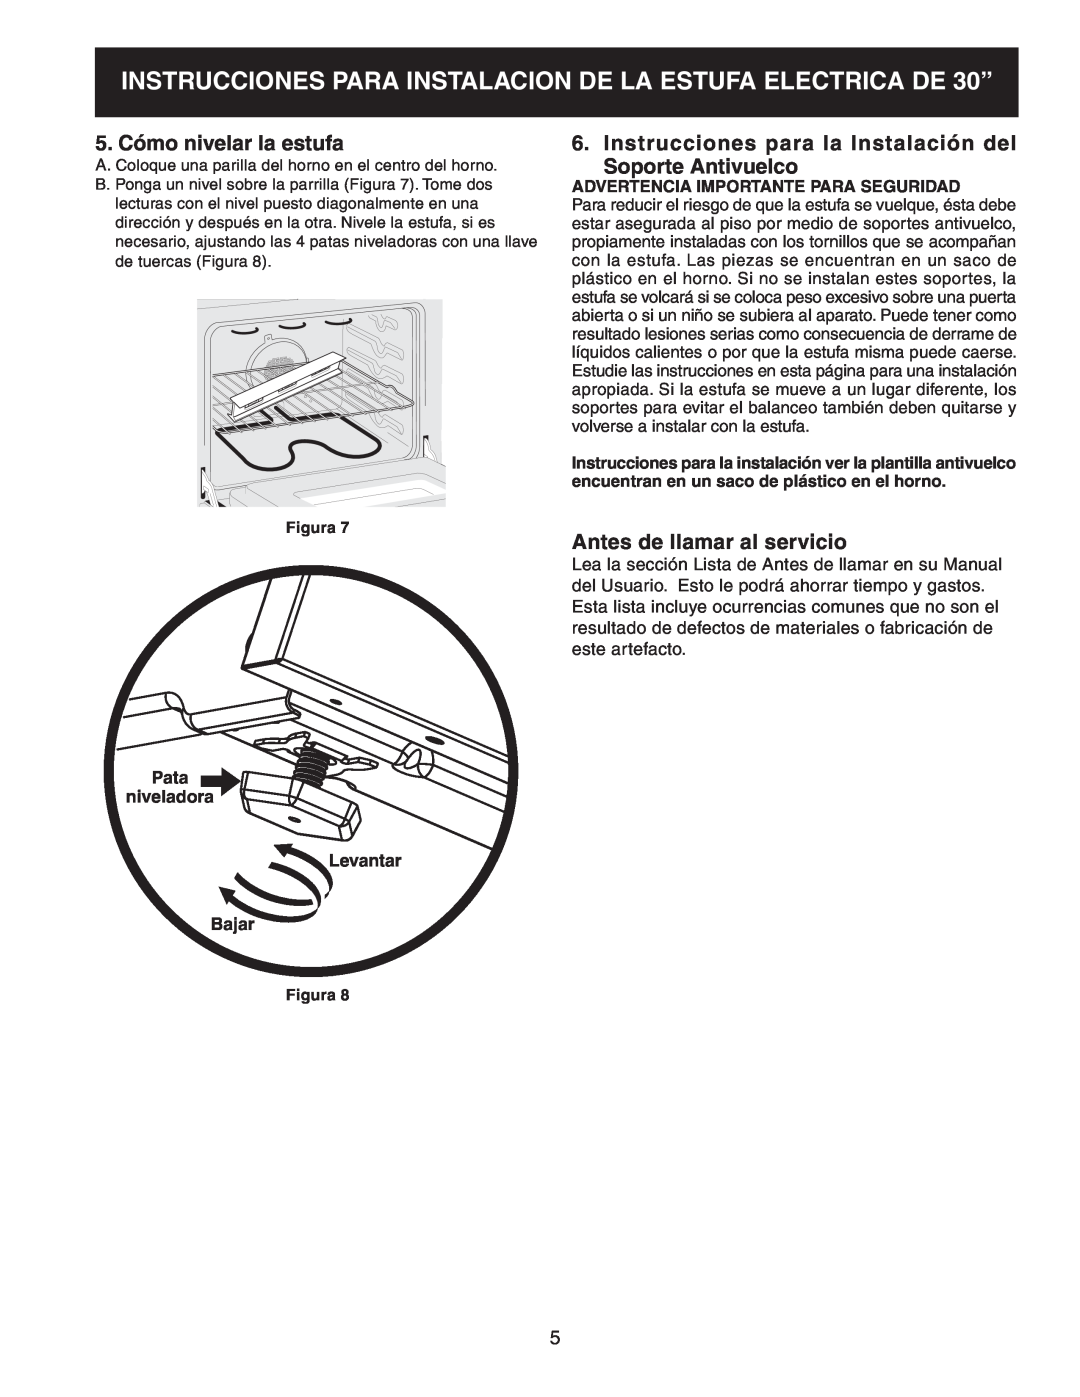 Frigidaire 318201724 manual 5. Cómo nivelar la estufa, Instrucciones para la Instalación del Soporte Antivuelco, Figura 